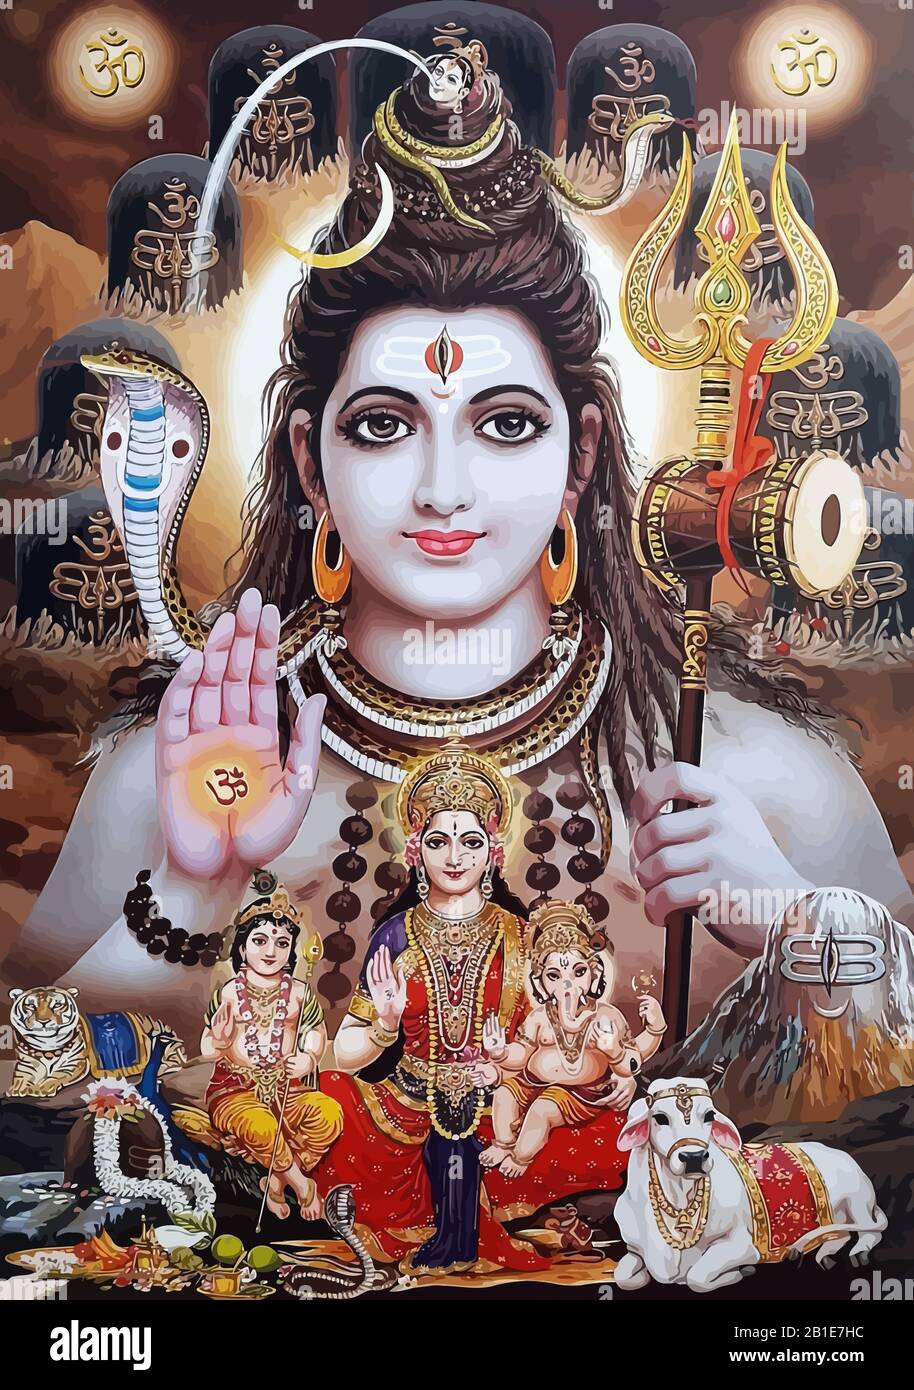 god Shiva snake and lady Durga tiger holy hinduism illustration ...